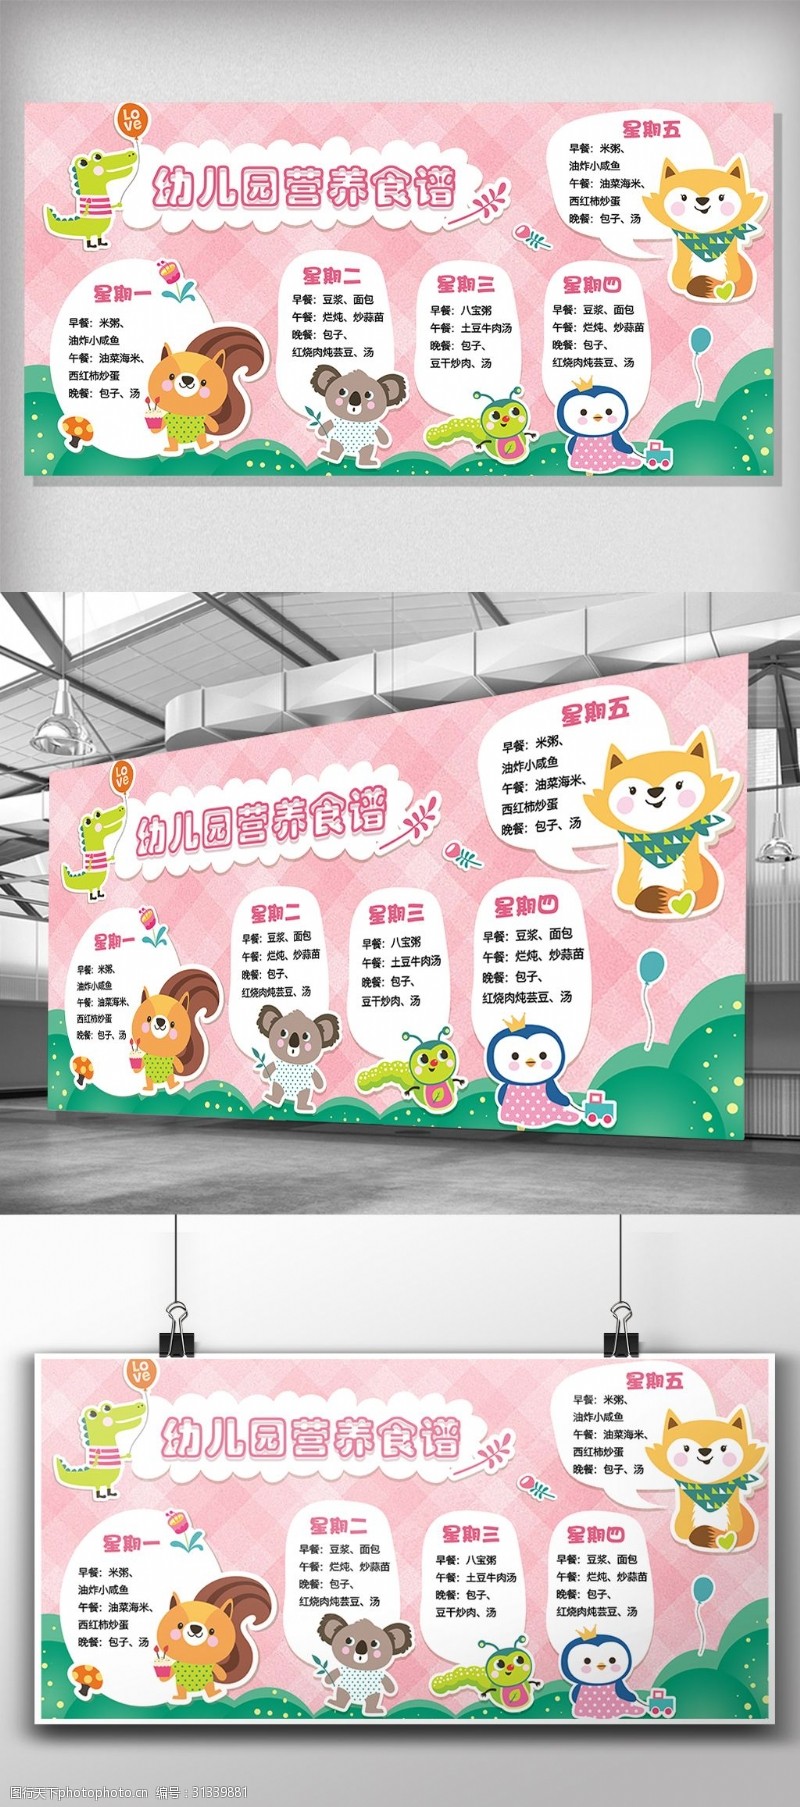 幼儿园食谱卡通动物背景幼儿园营养食谱展板